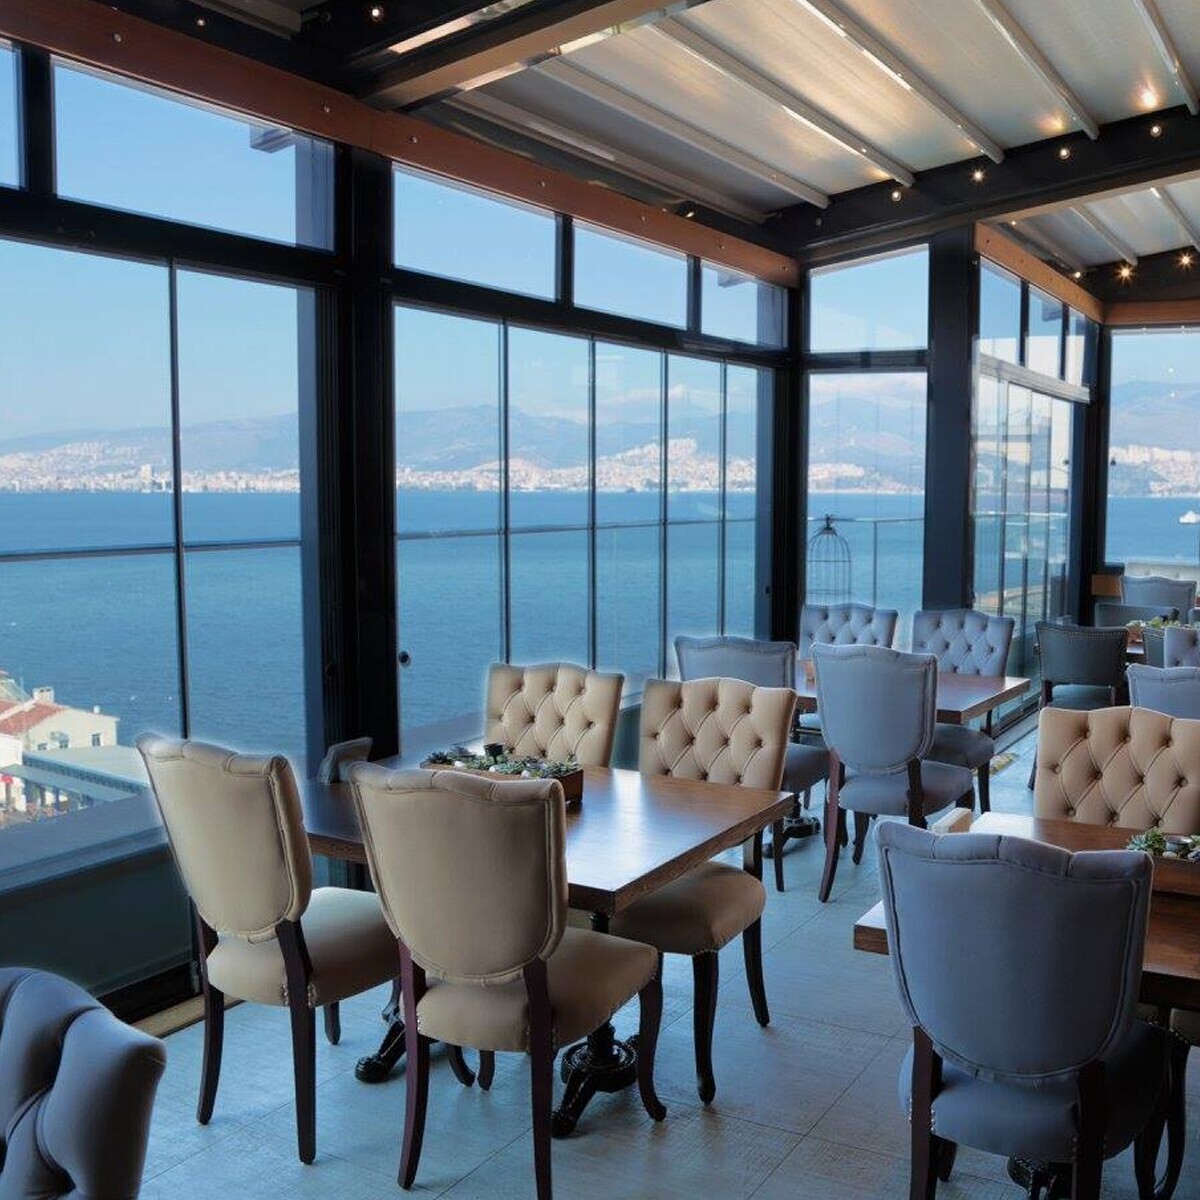 Konak Pasaport Pier Hotel'de Deniz Manzarası Eşliğinde Açık Büfe Kahvaltı Keyfi